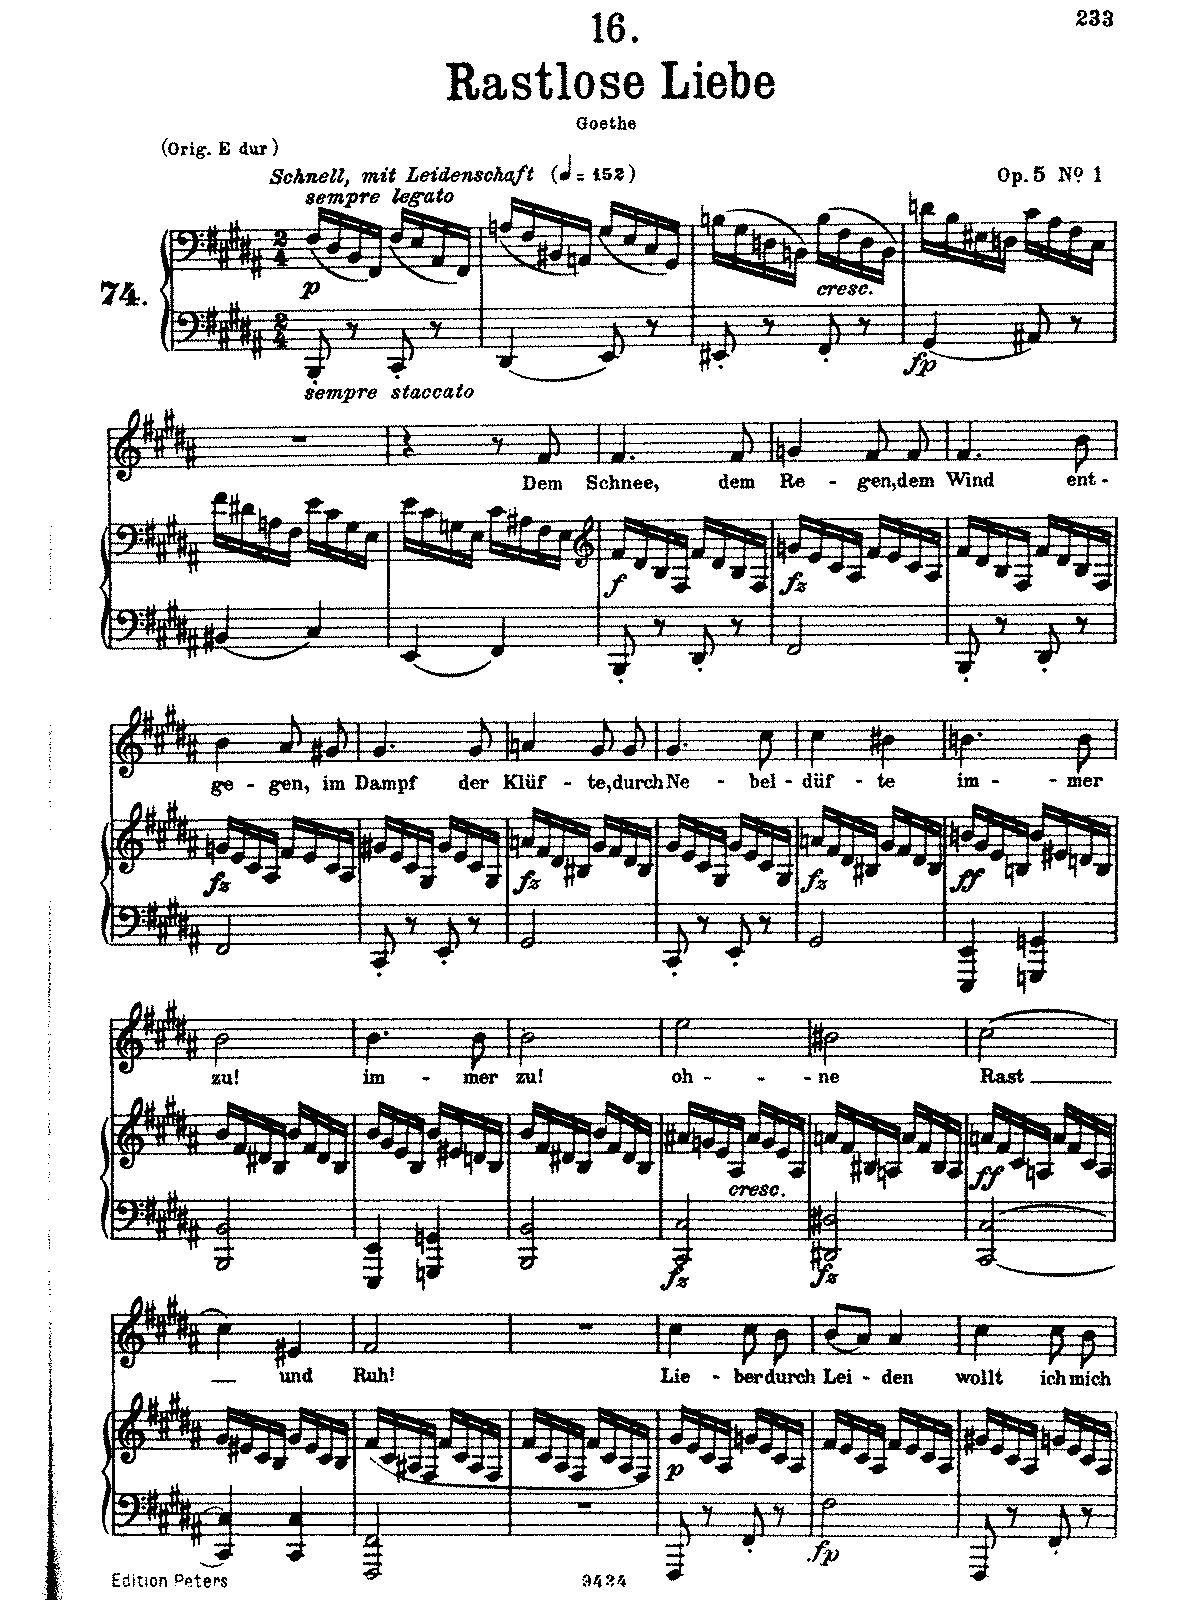 Rastlose Liebe, D.138 (Schubert, Franz) - IMSLP: Free Sheet Music PDF ...